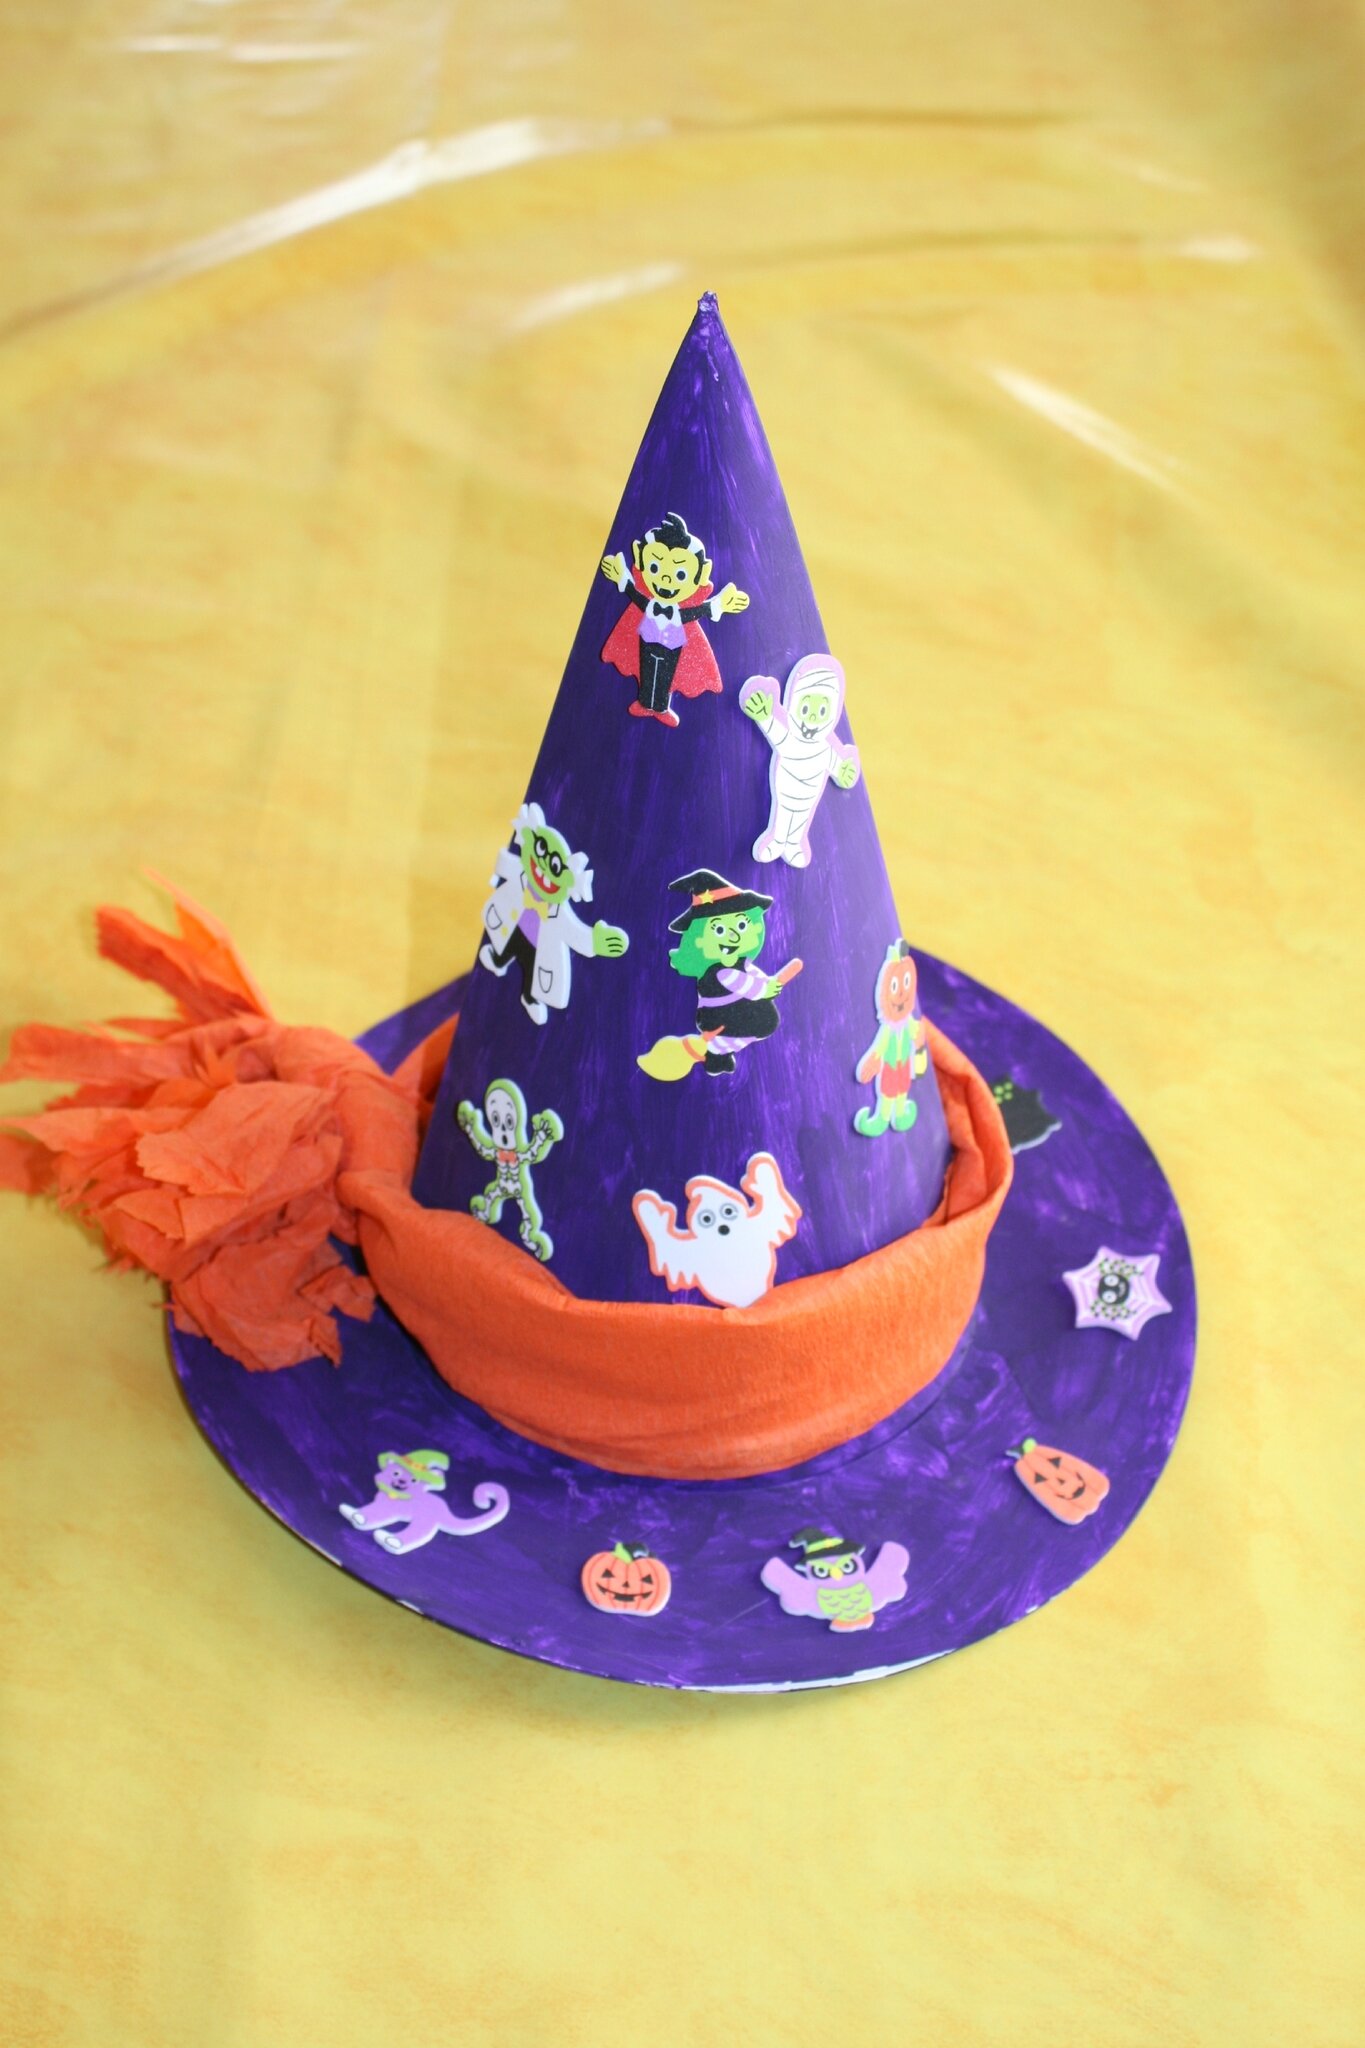 Peuvent être suspendus à l'intérieur Décoration d'Halloween Lunriwis Lot de 5 chapeaux de sorcière lumineux pour Halloween à l'extérieur et dans les cours.